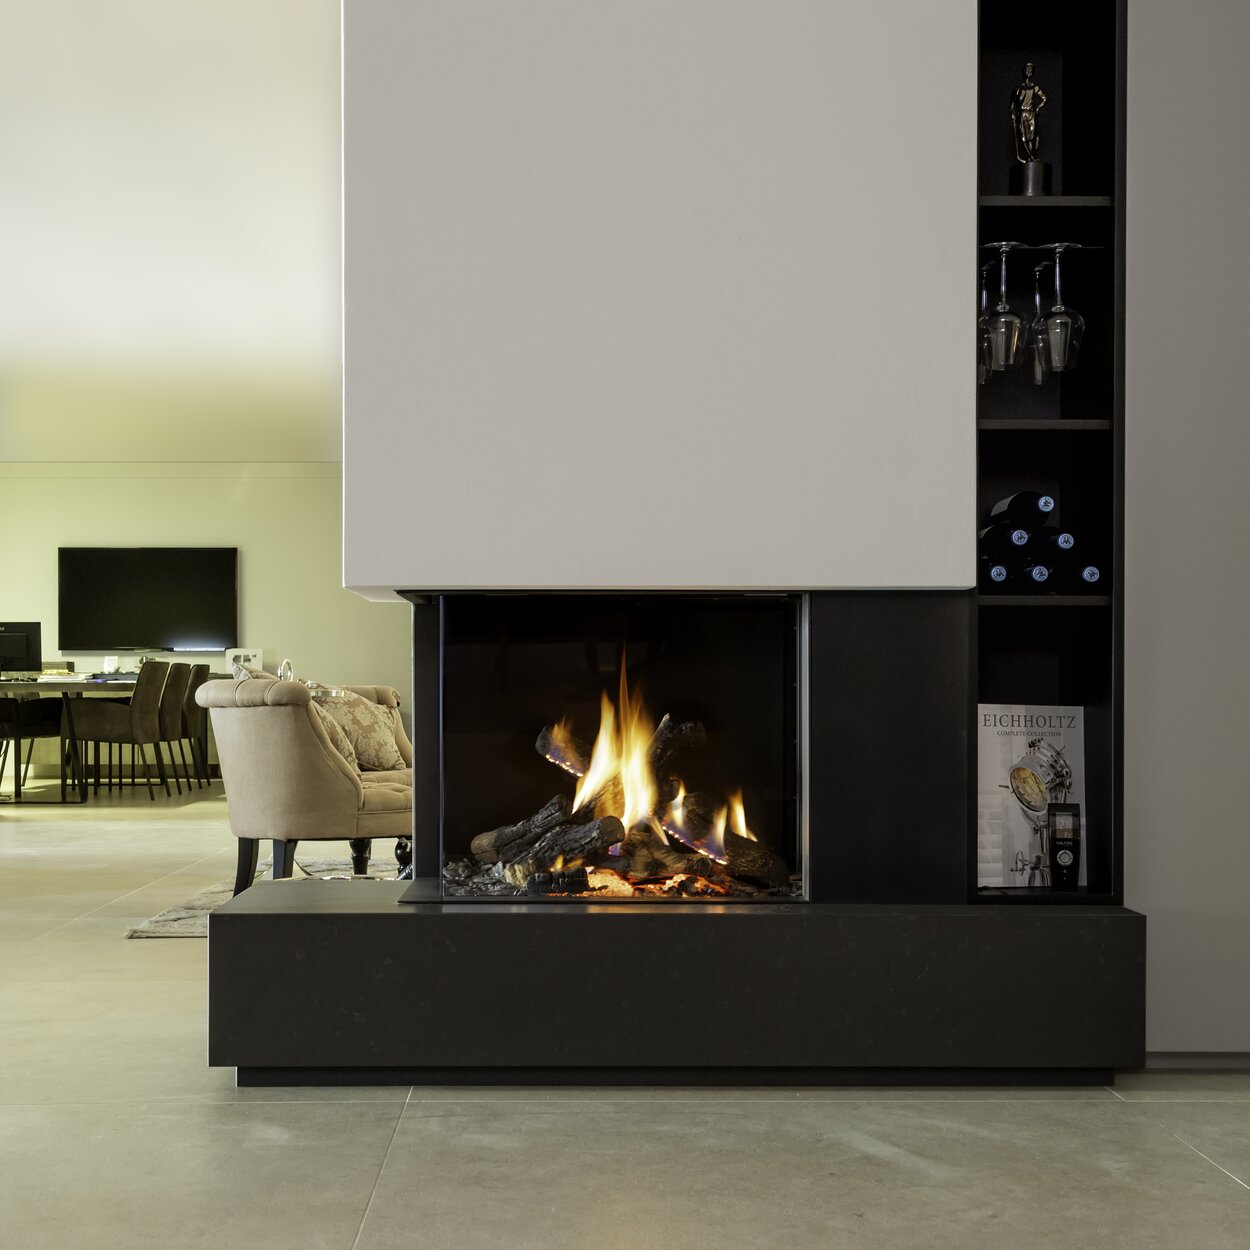 Gas-Kamin GP65/55C zweiseitig verglast auf schwarzem Sockel mit weisser Verkleidung im modernen Wohnzimmer